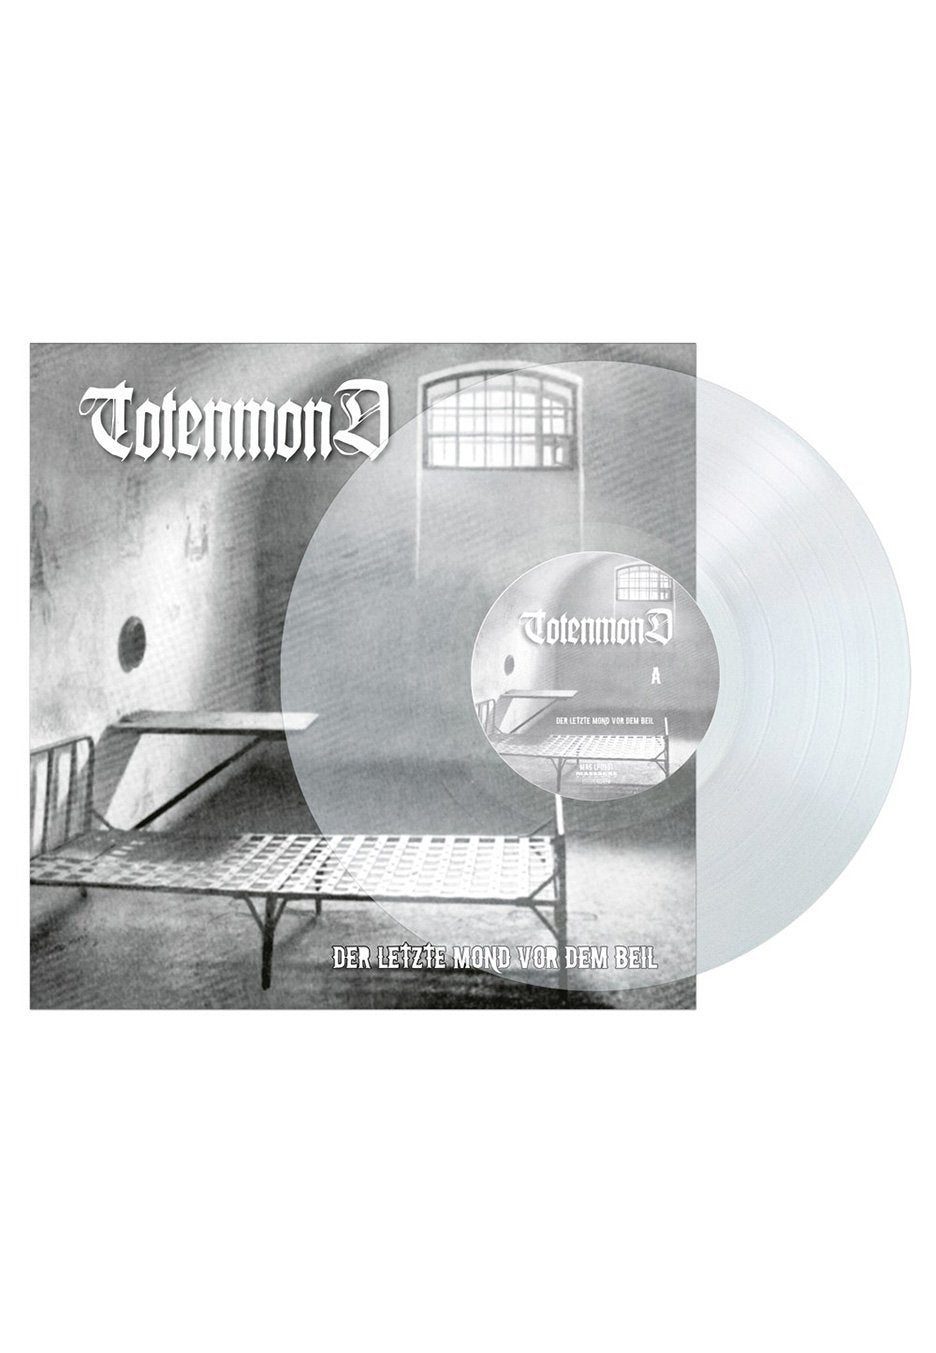 Totenmond - Der Letzte Mond Vor Dem Beil Clear - Colored Vinyl